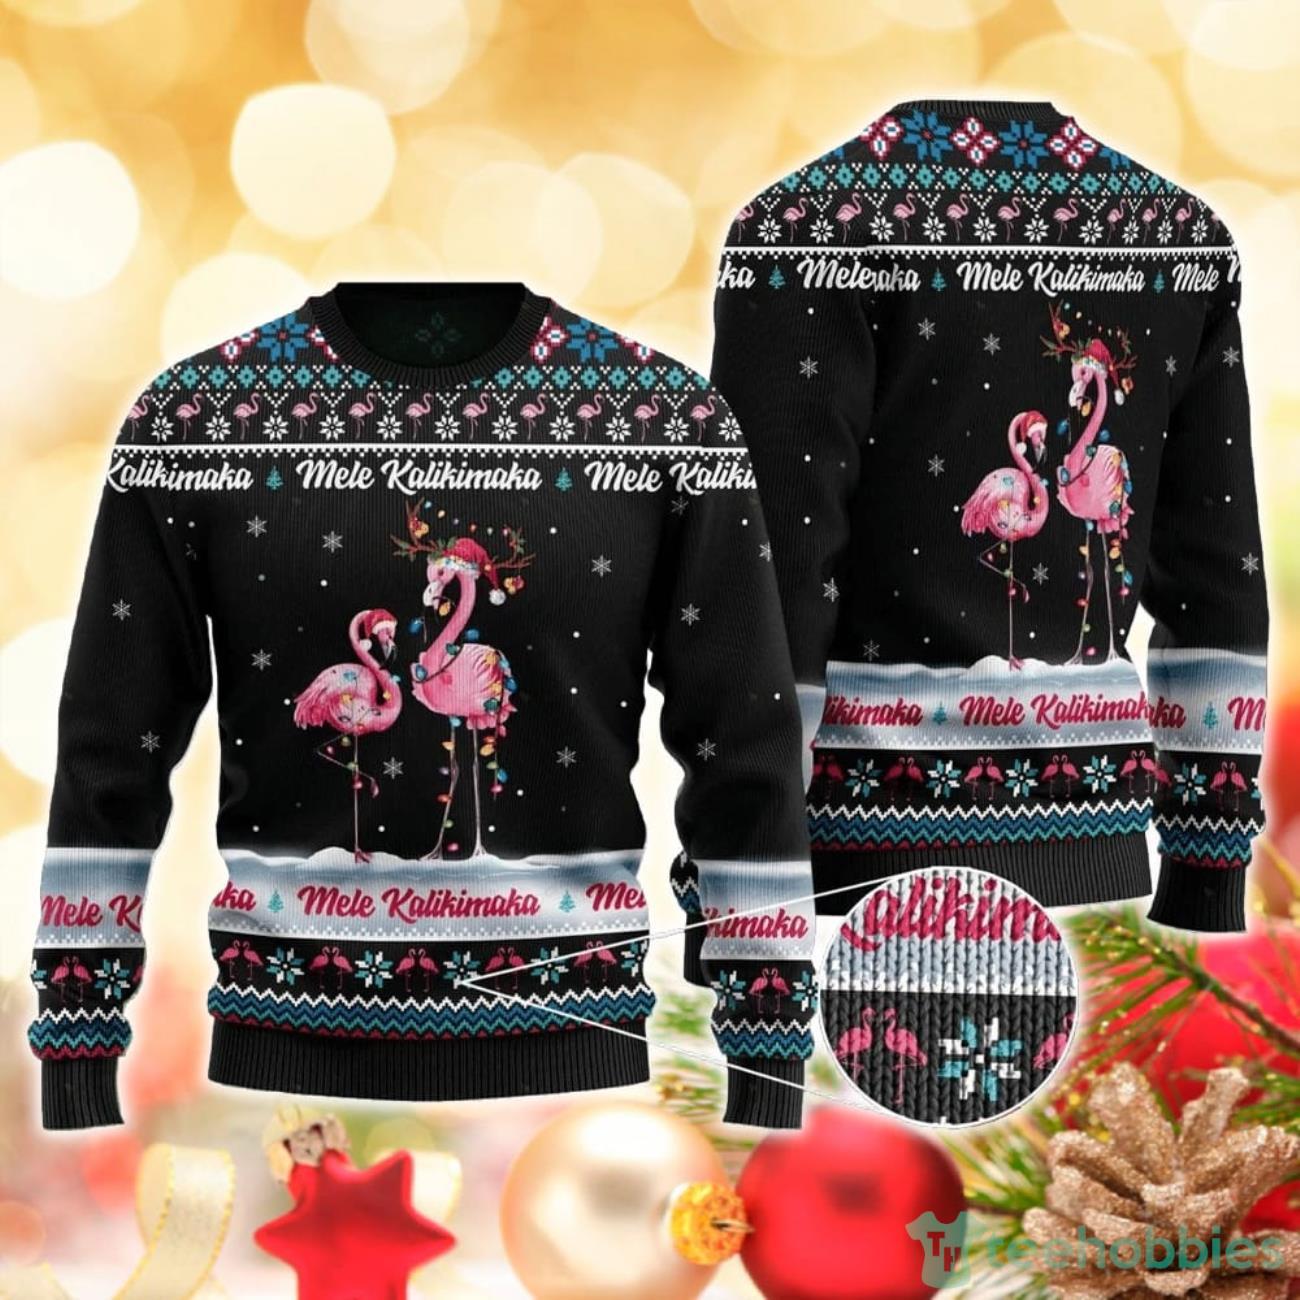 Mele Kalikimaka Ugly Sweater For Christmas Product Photo 1